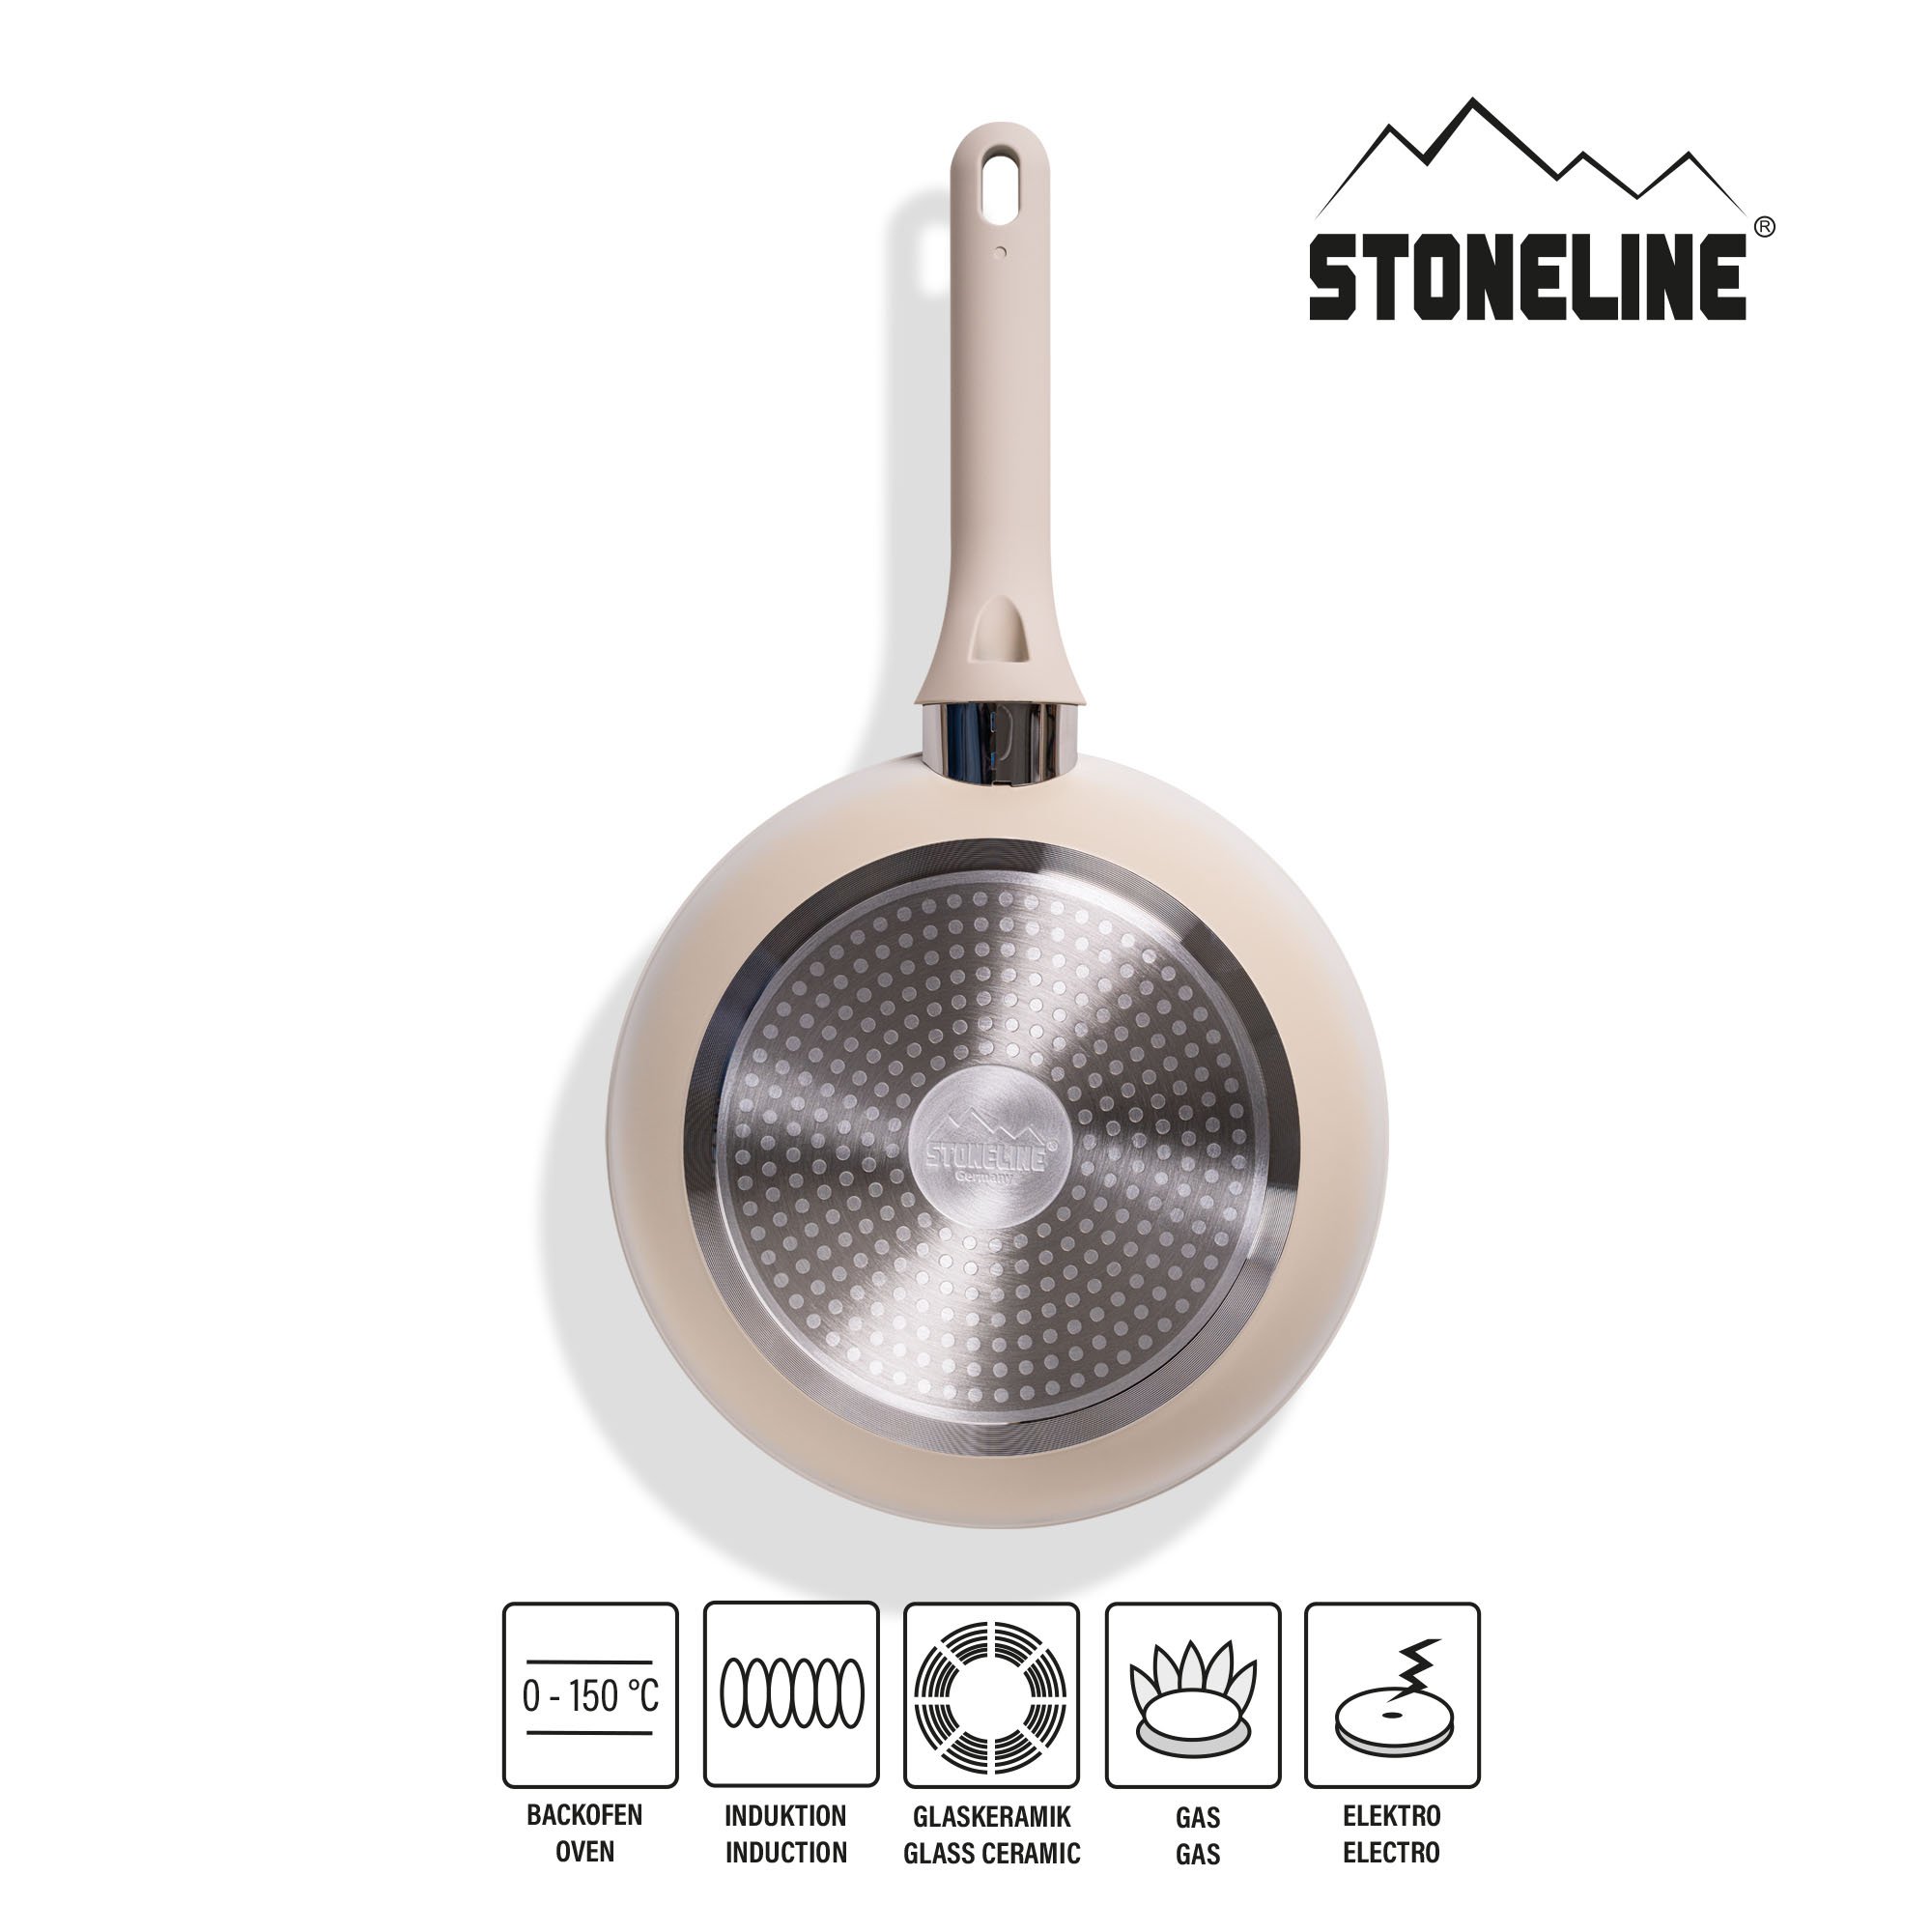 STONELINE® Creme Kochgeschirr-Set 11-teilig mit Deckeln, beschichtete Töpfe & Pfannen